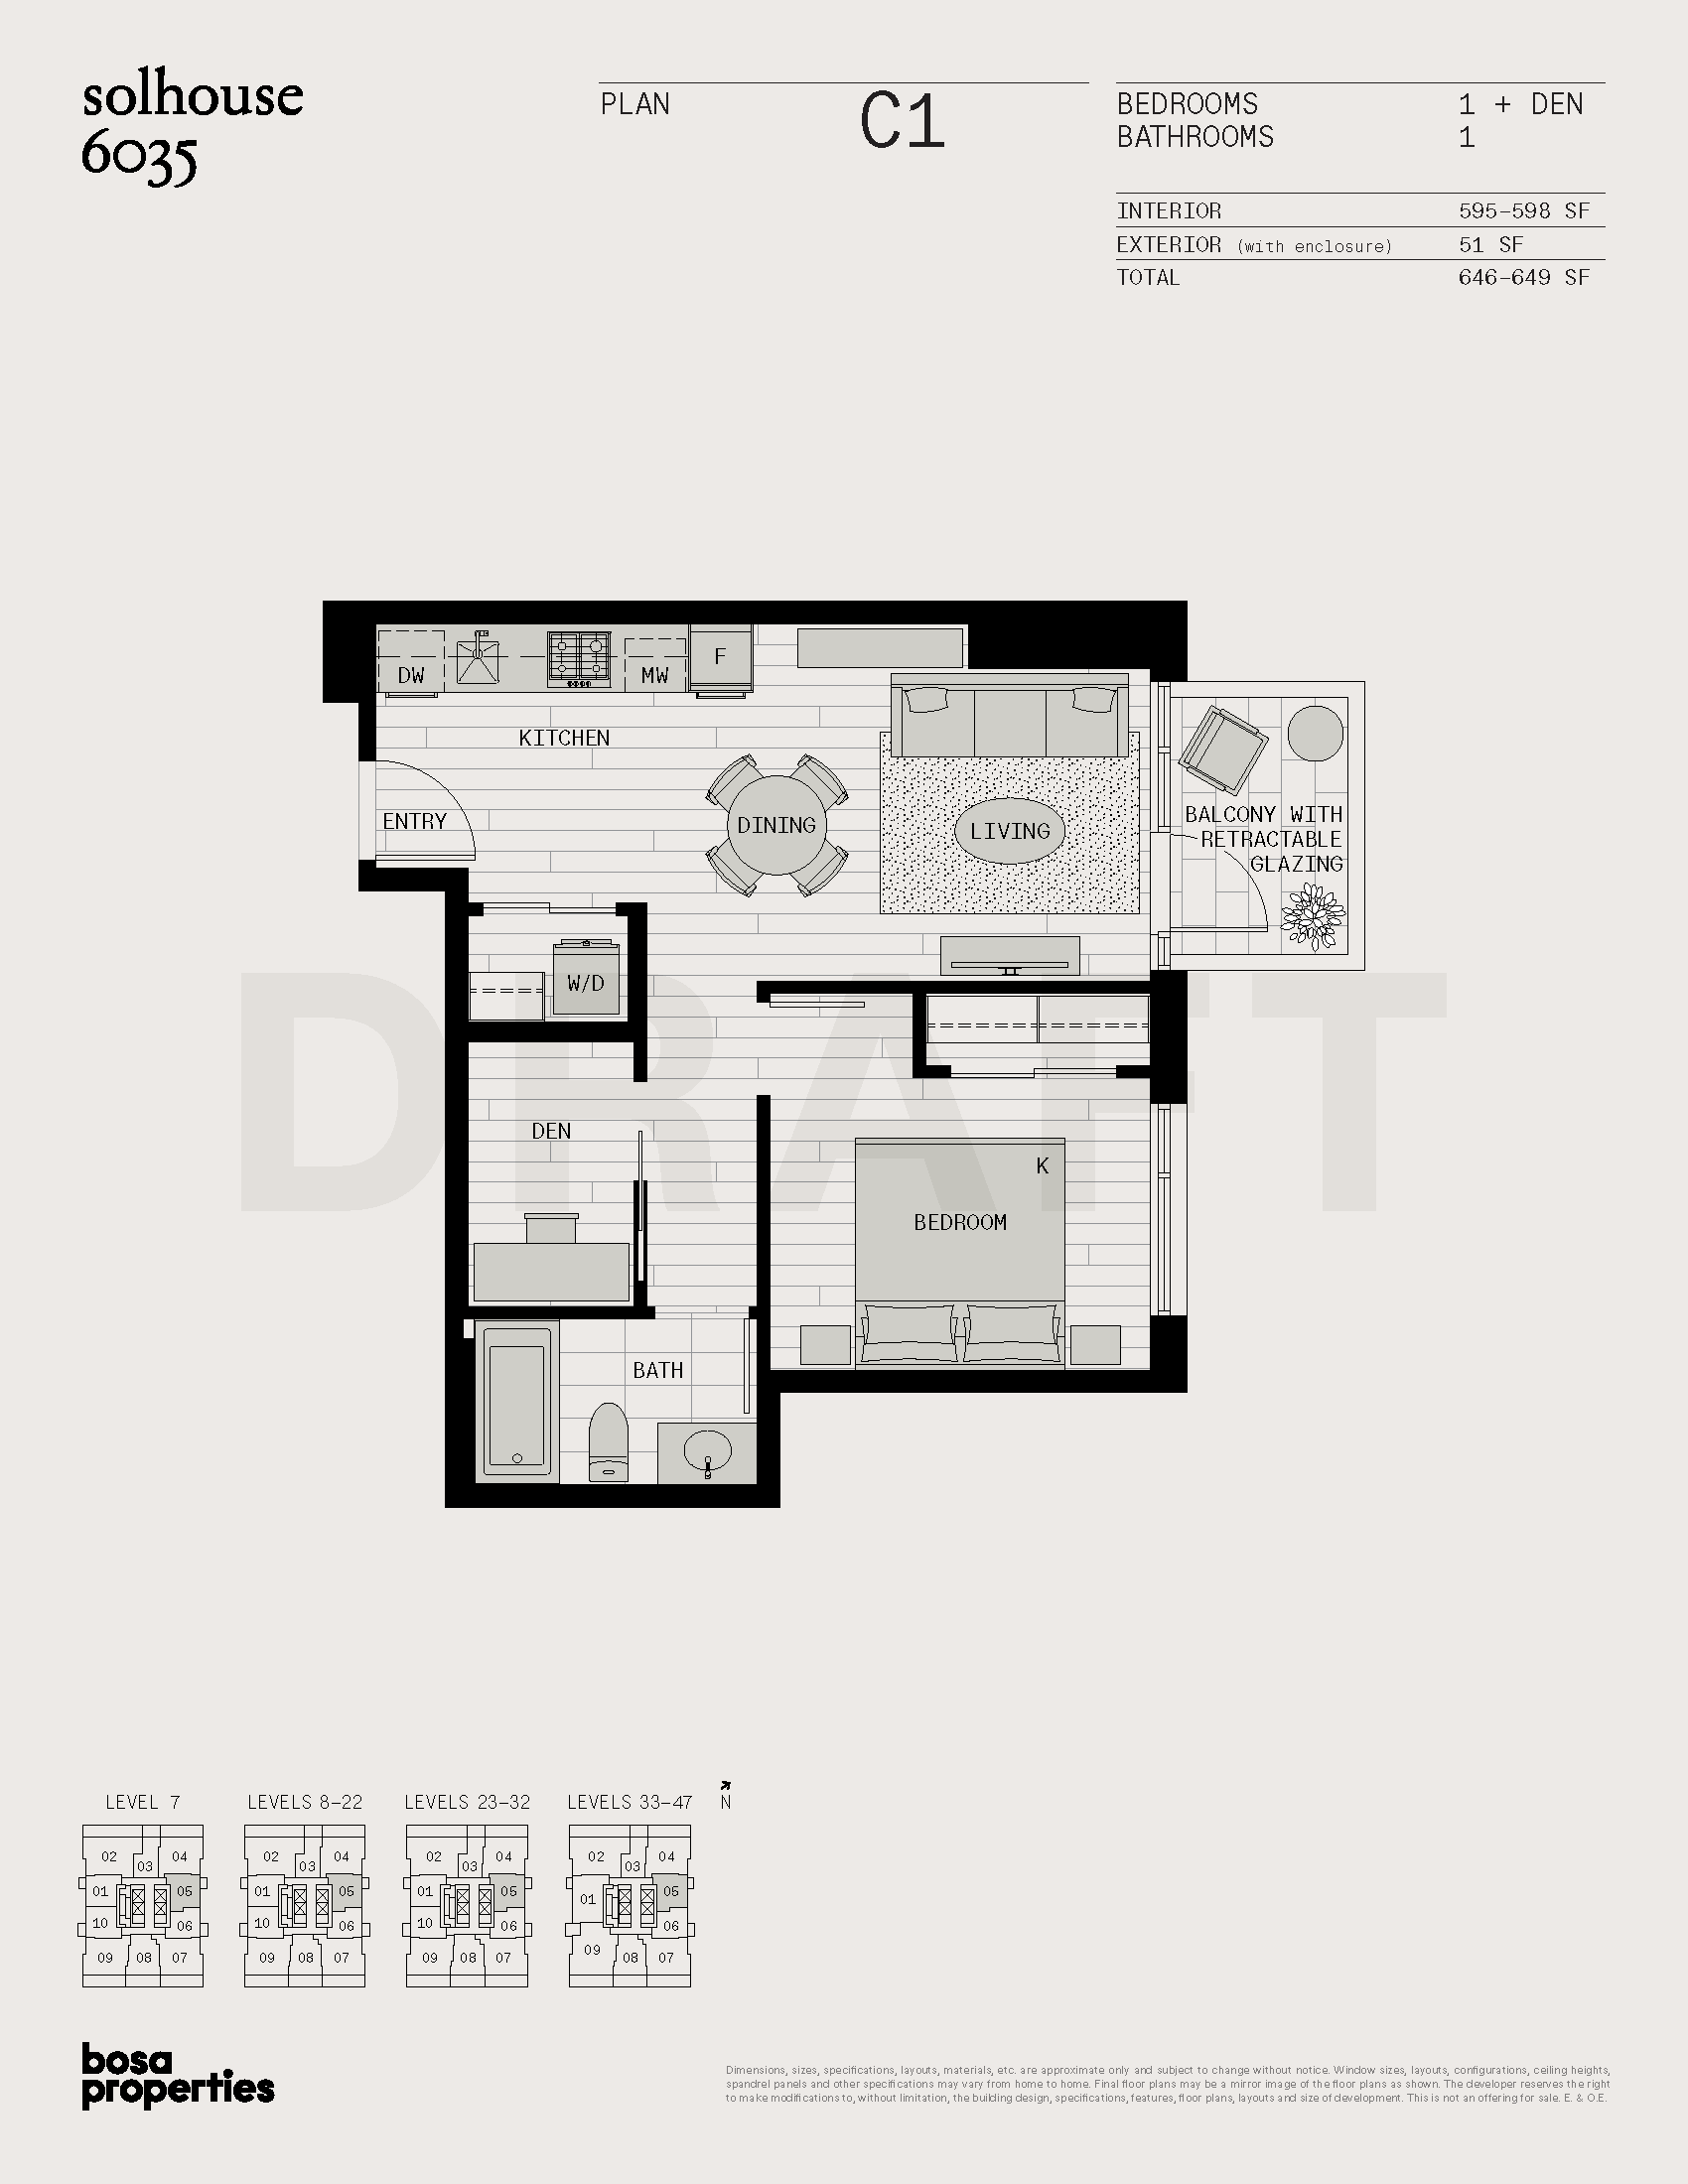 Solhouse Floorplan C1 1 Bedroom Den